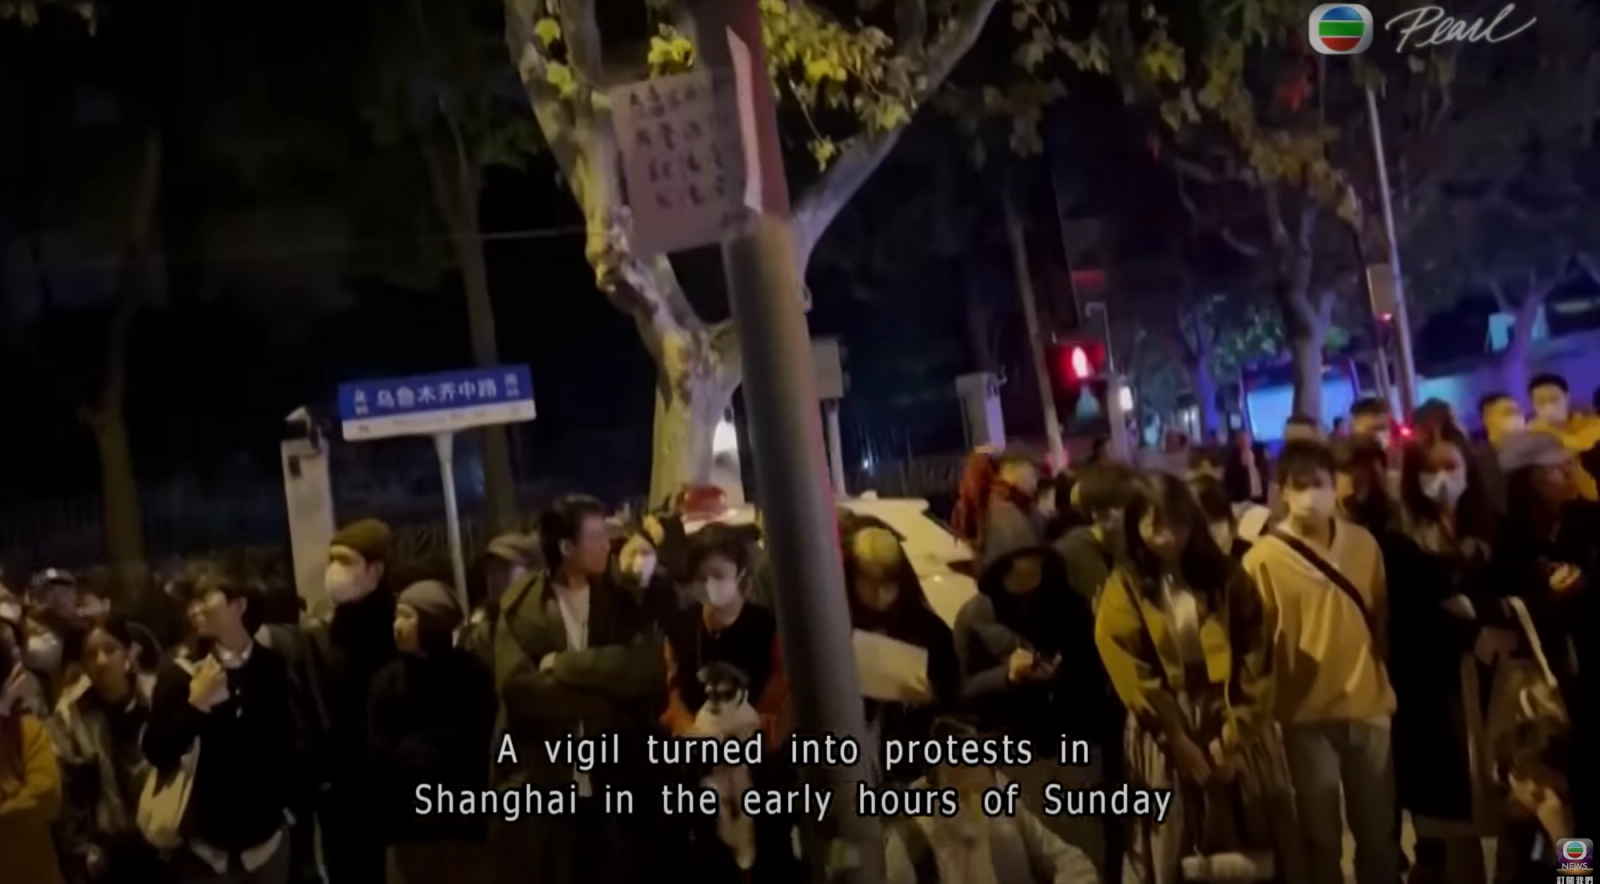 TVB News on protests